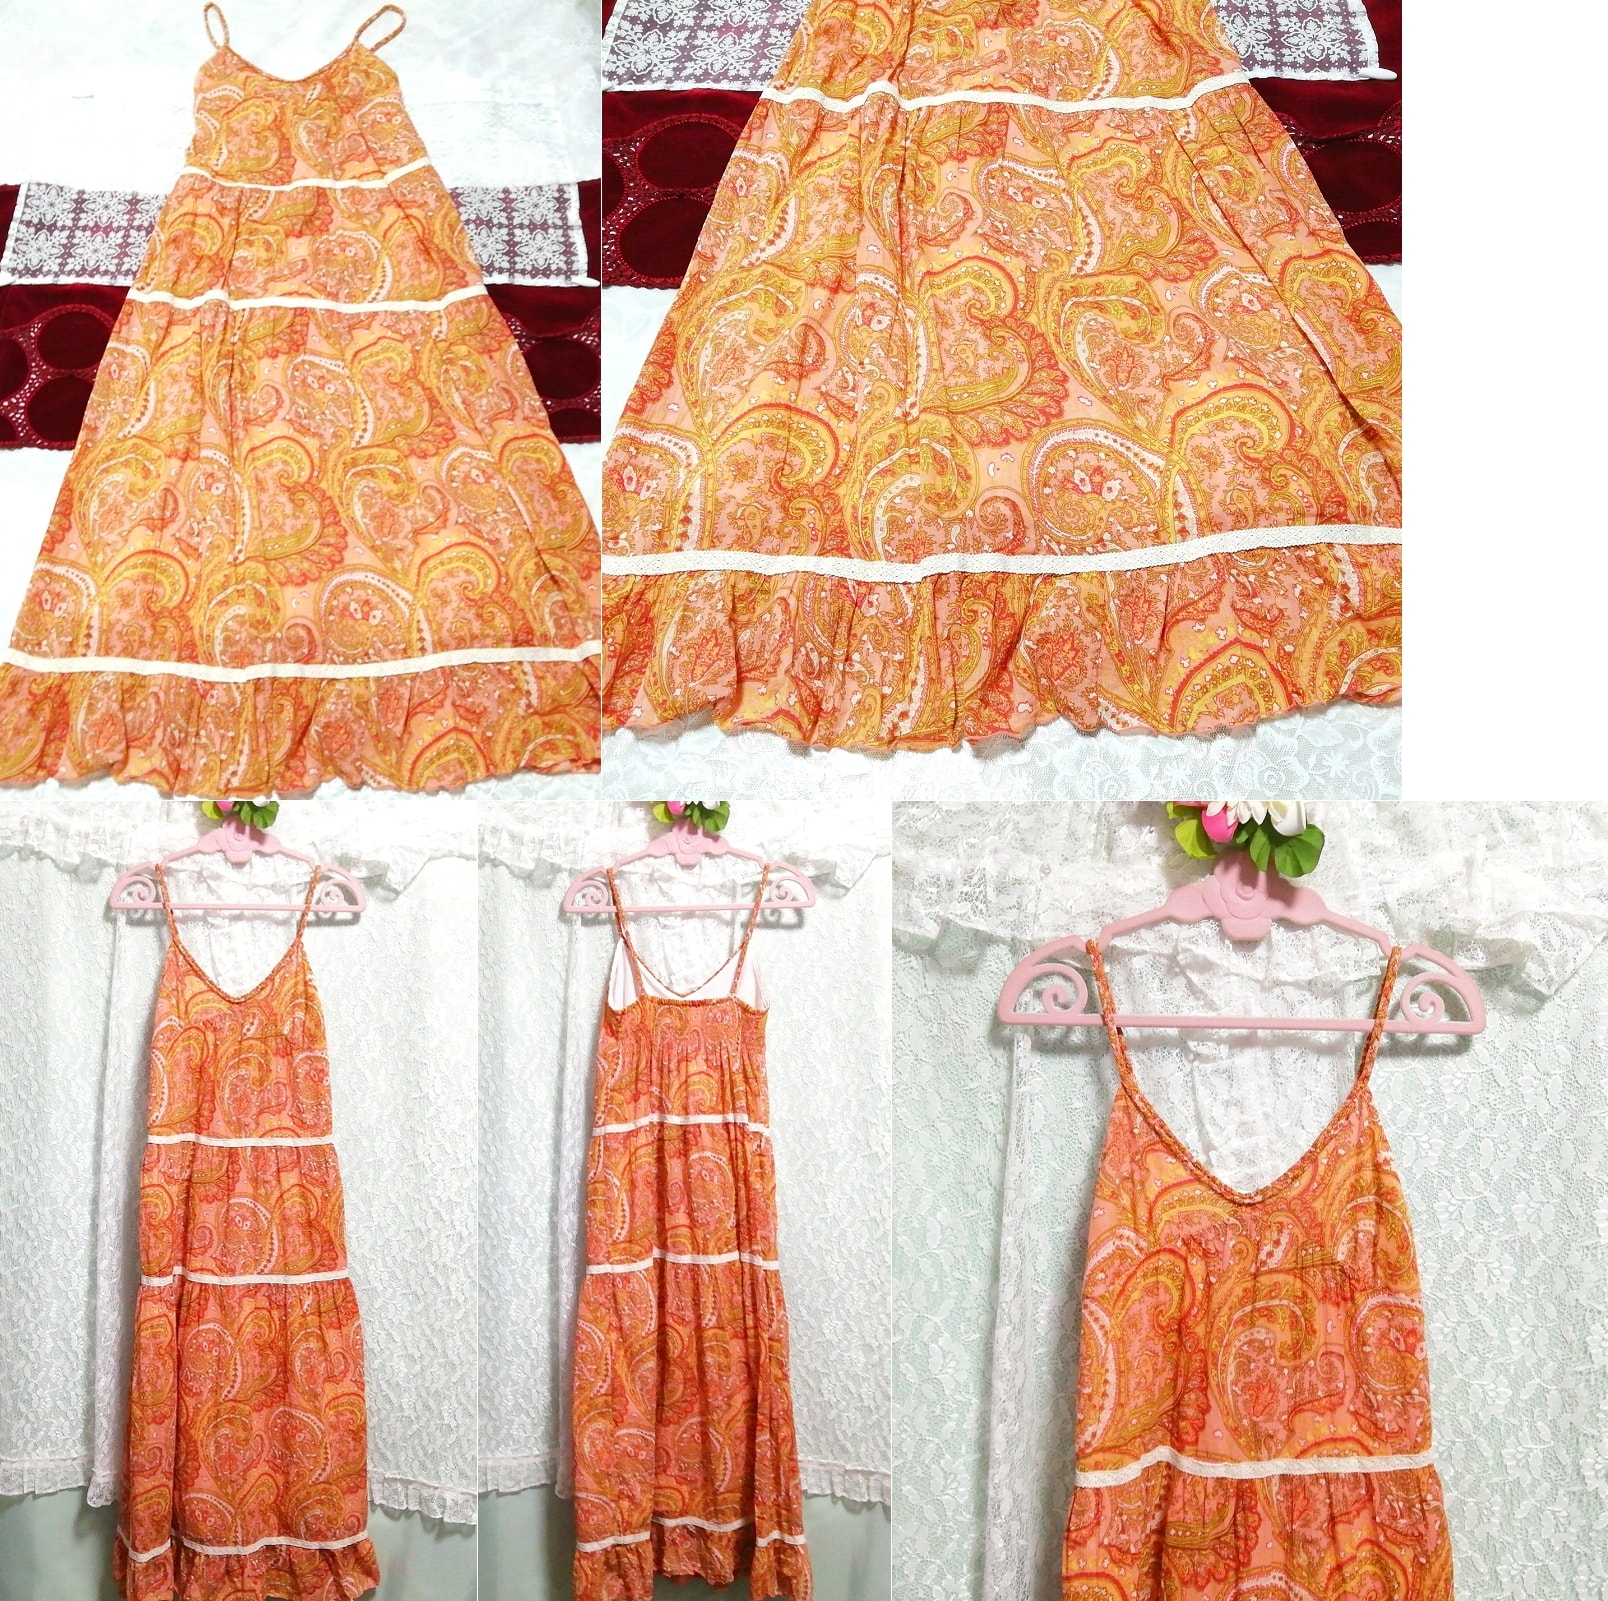 오렌지 오렌지 에스닉무늬 코튼 네글리제 나이트가운 캐미솔 스커트 맥시 드레스, 롱 스커트, m 사이즈